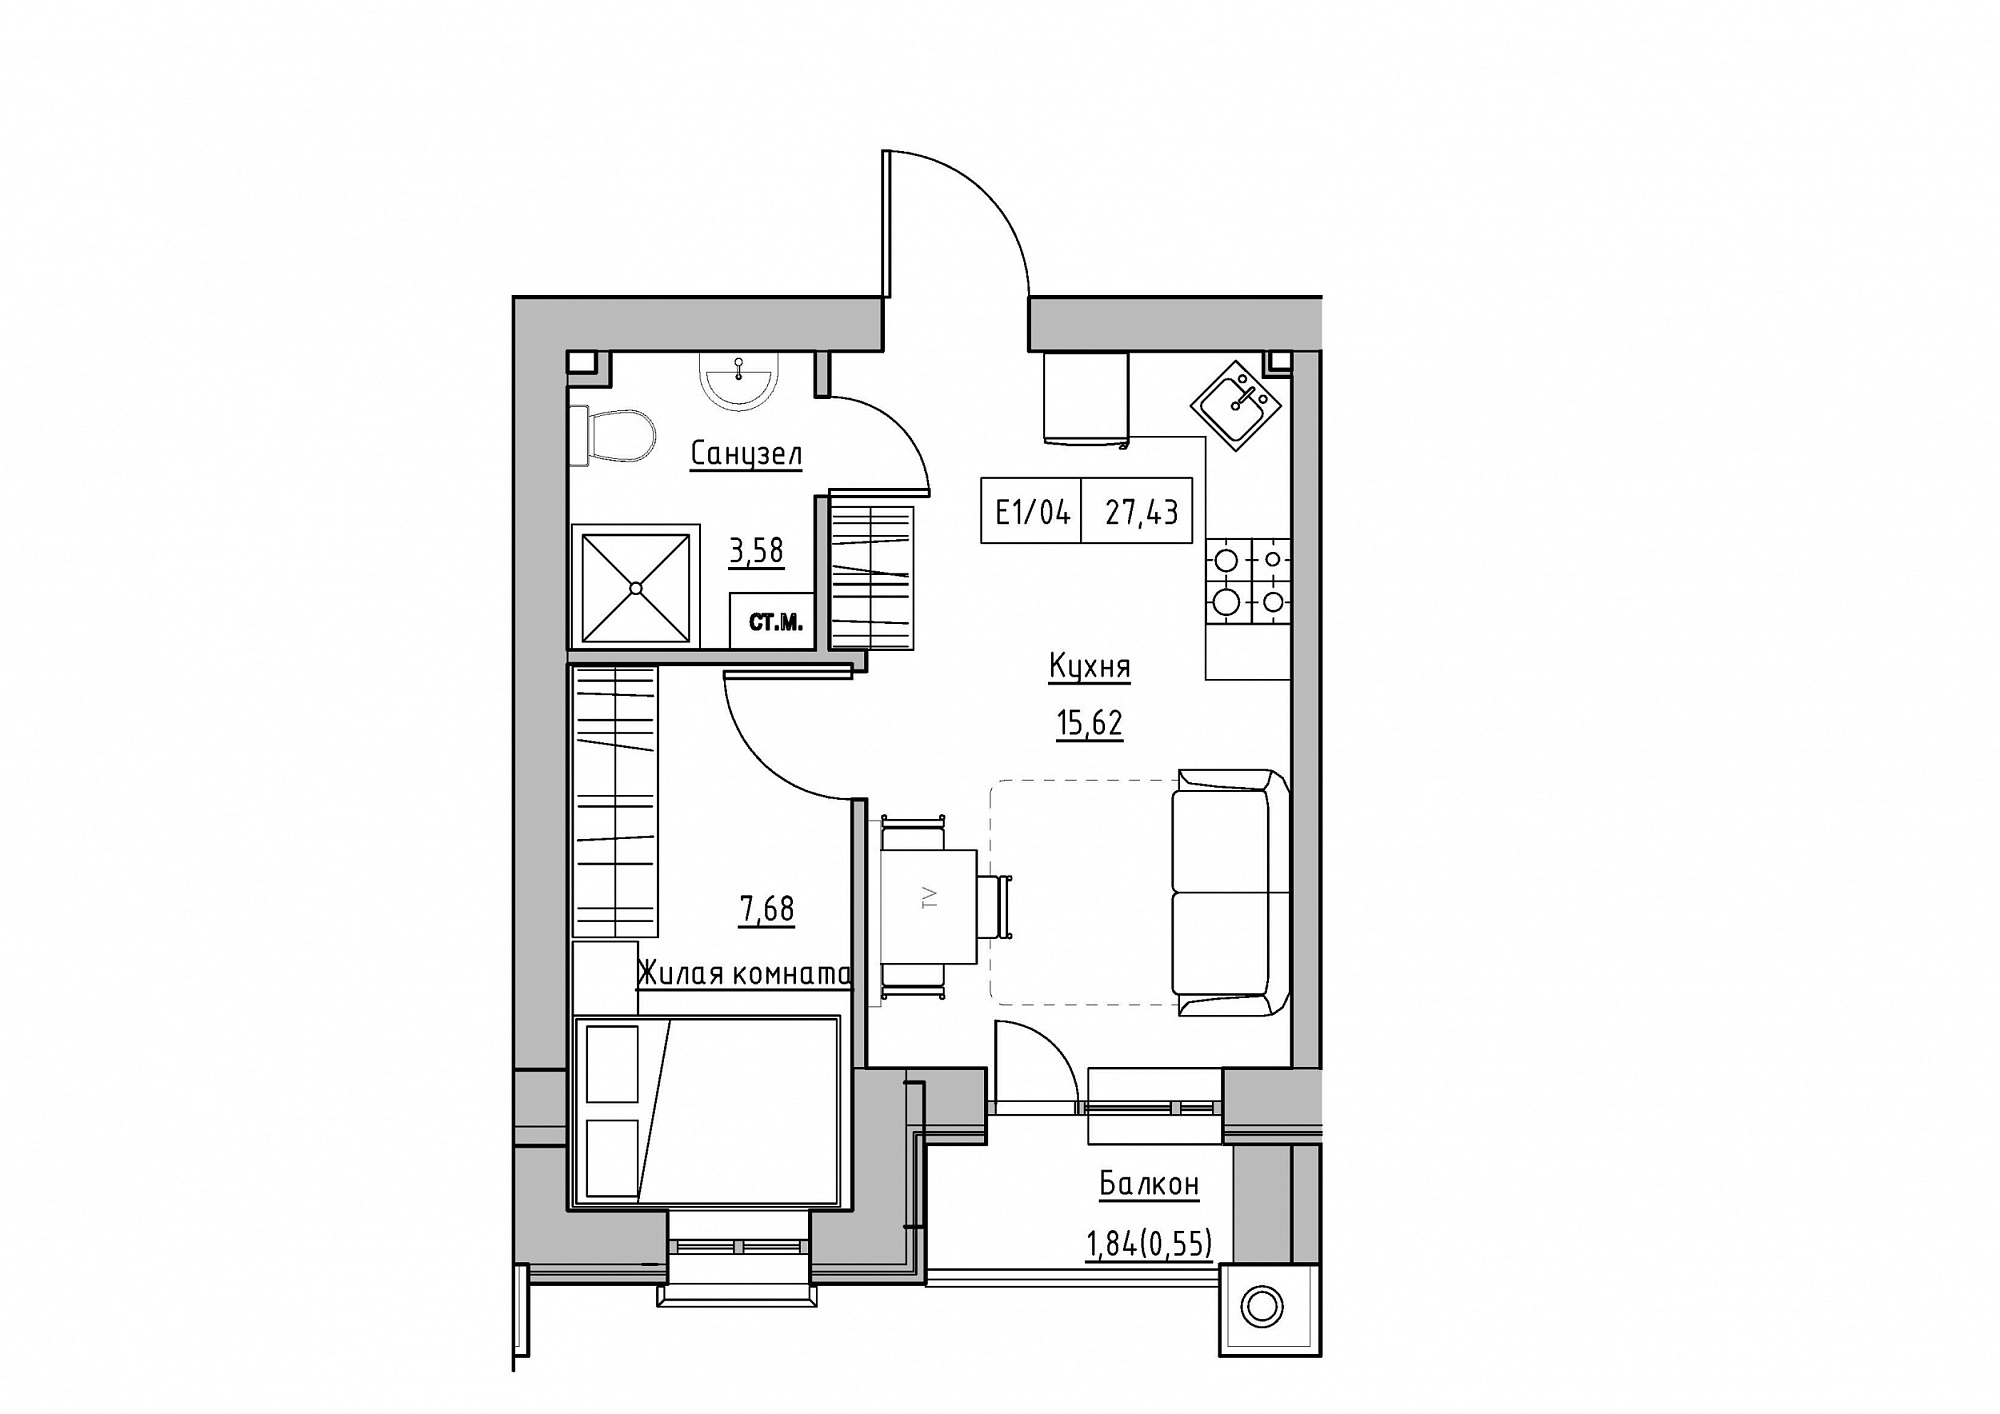 Планировка 1-к квартира площей 27.43м2, KS-011-05/0012.